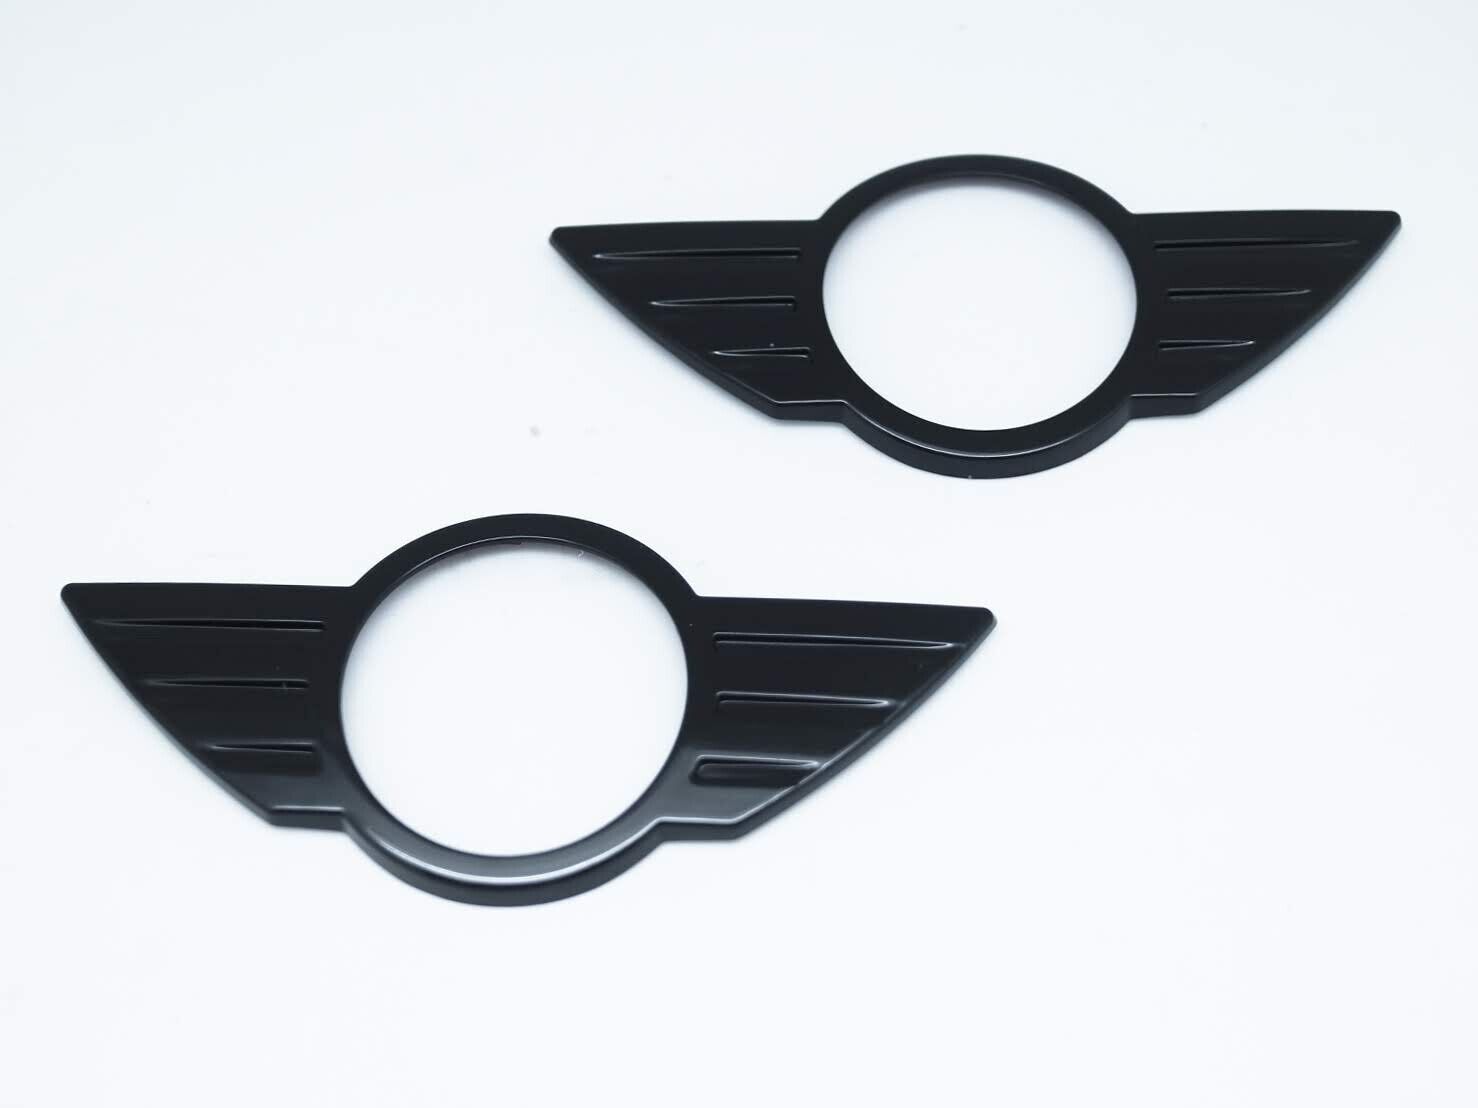 Mini Cooper Wings MINI Logo Badge Emblem: Chrome Wings + Black: 4.75 - MINI  Cooper Accessories + MINI Cooper Parts